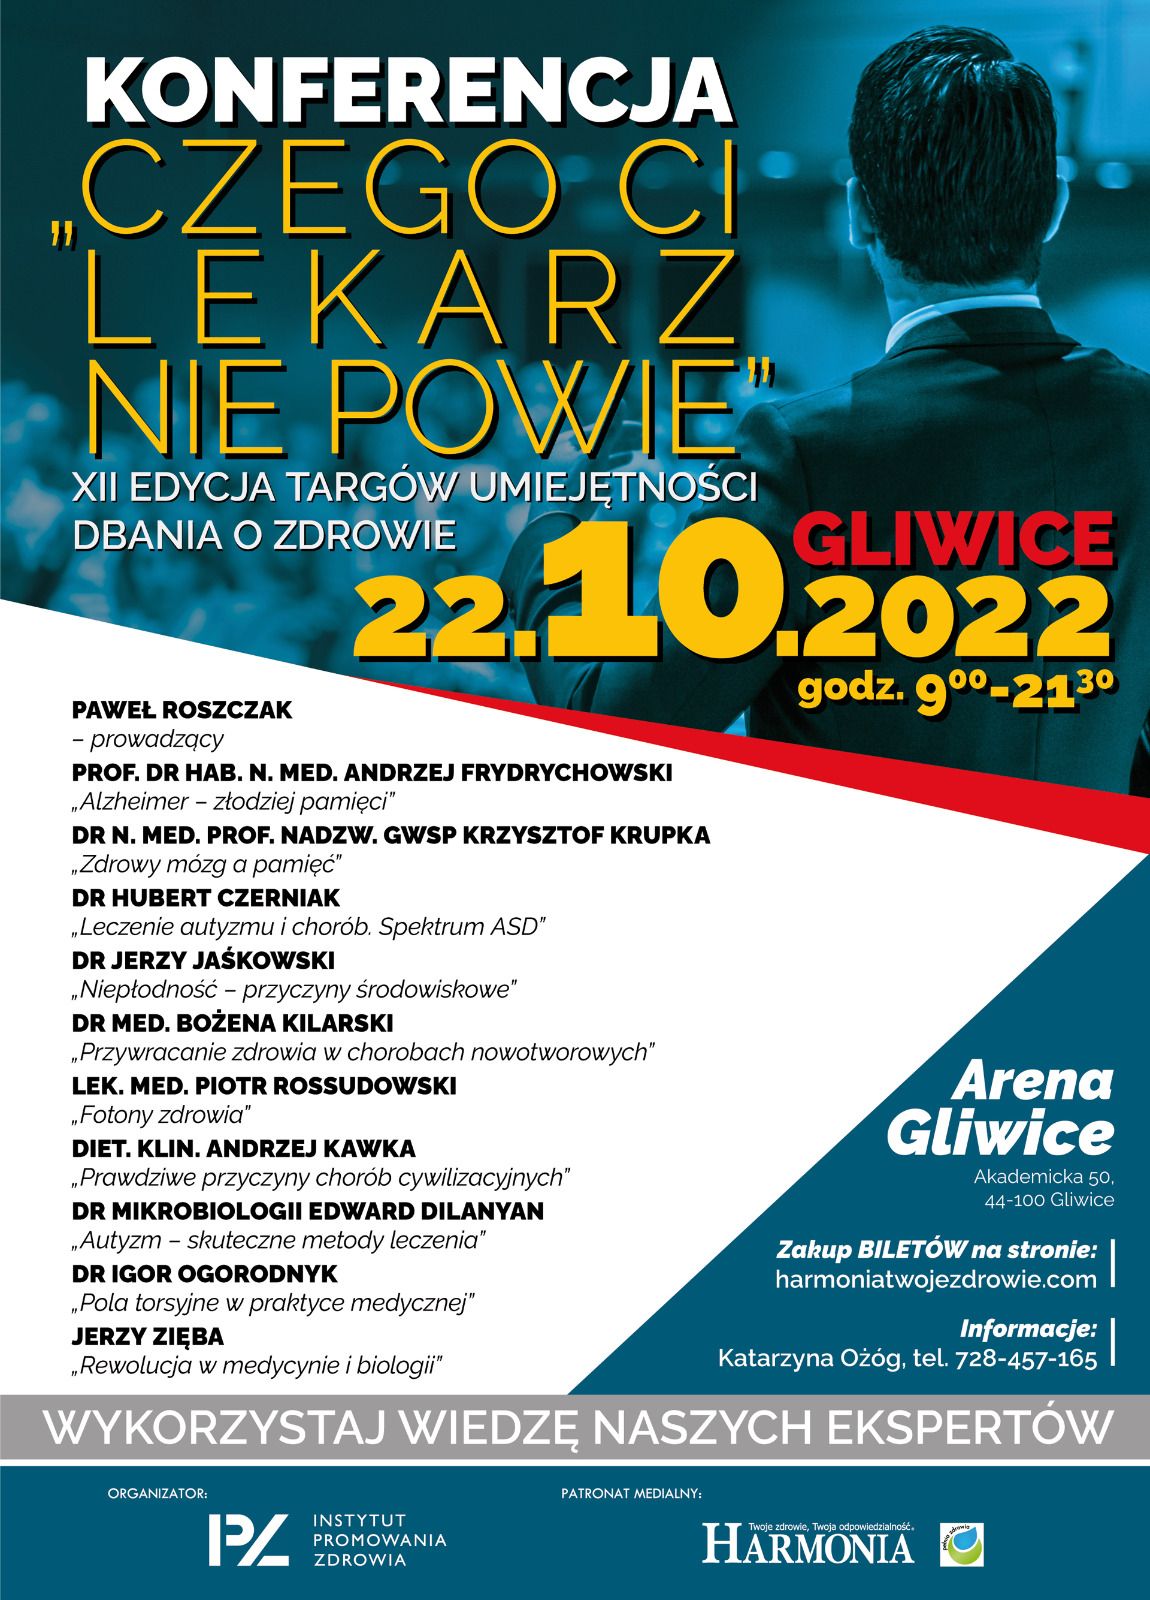 Czego ci lekarz nie powie - konferencja Arena Gliwice - 22 paćdziernika 2022